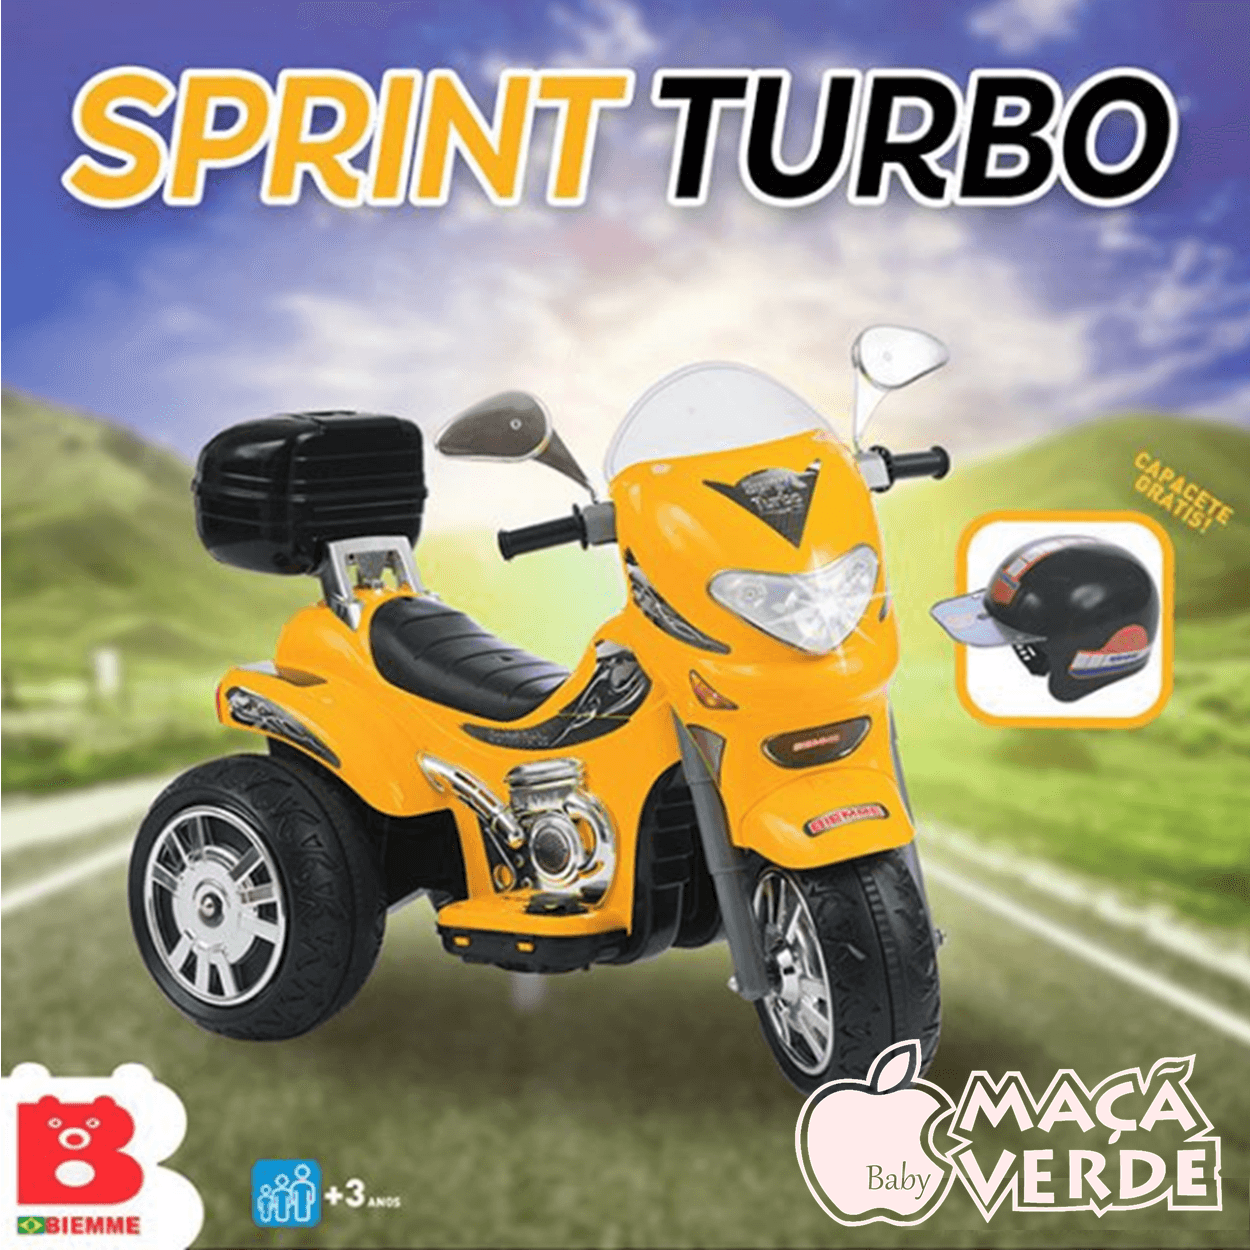 Moto Eletrica Biemme Sprint Turbo 12V com Capacete Preta Boy - Maçã Verde  Baby